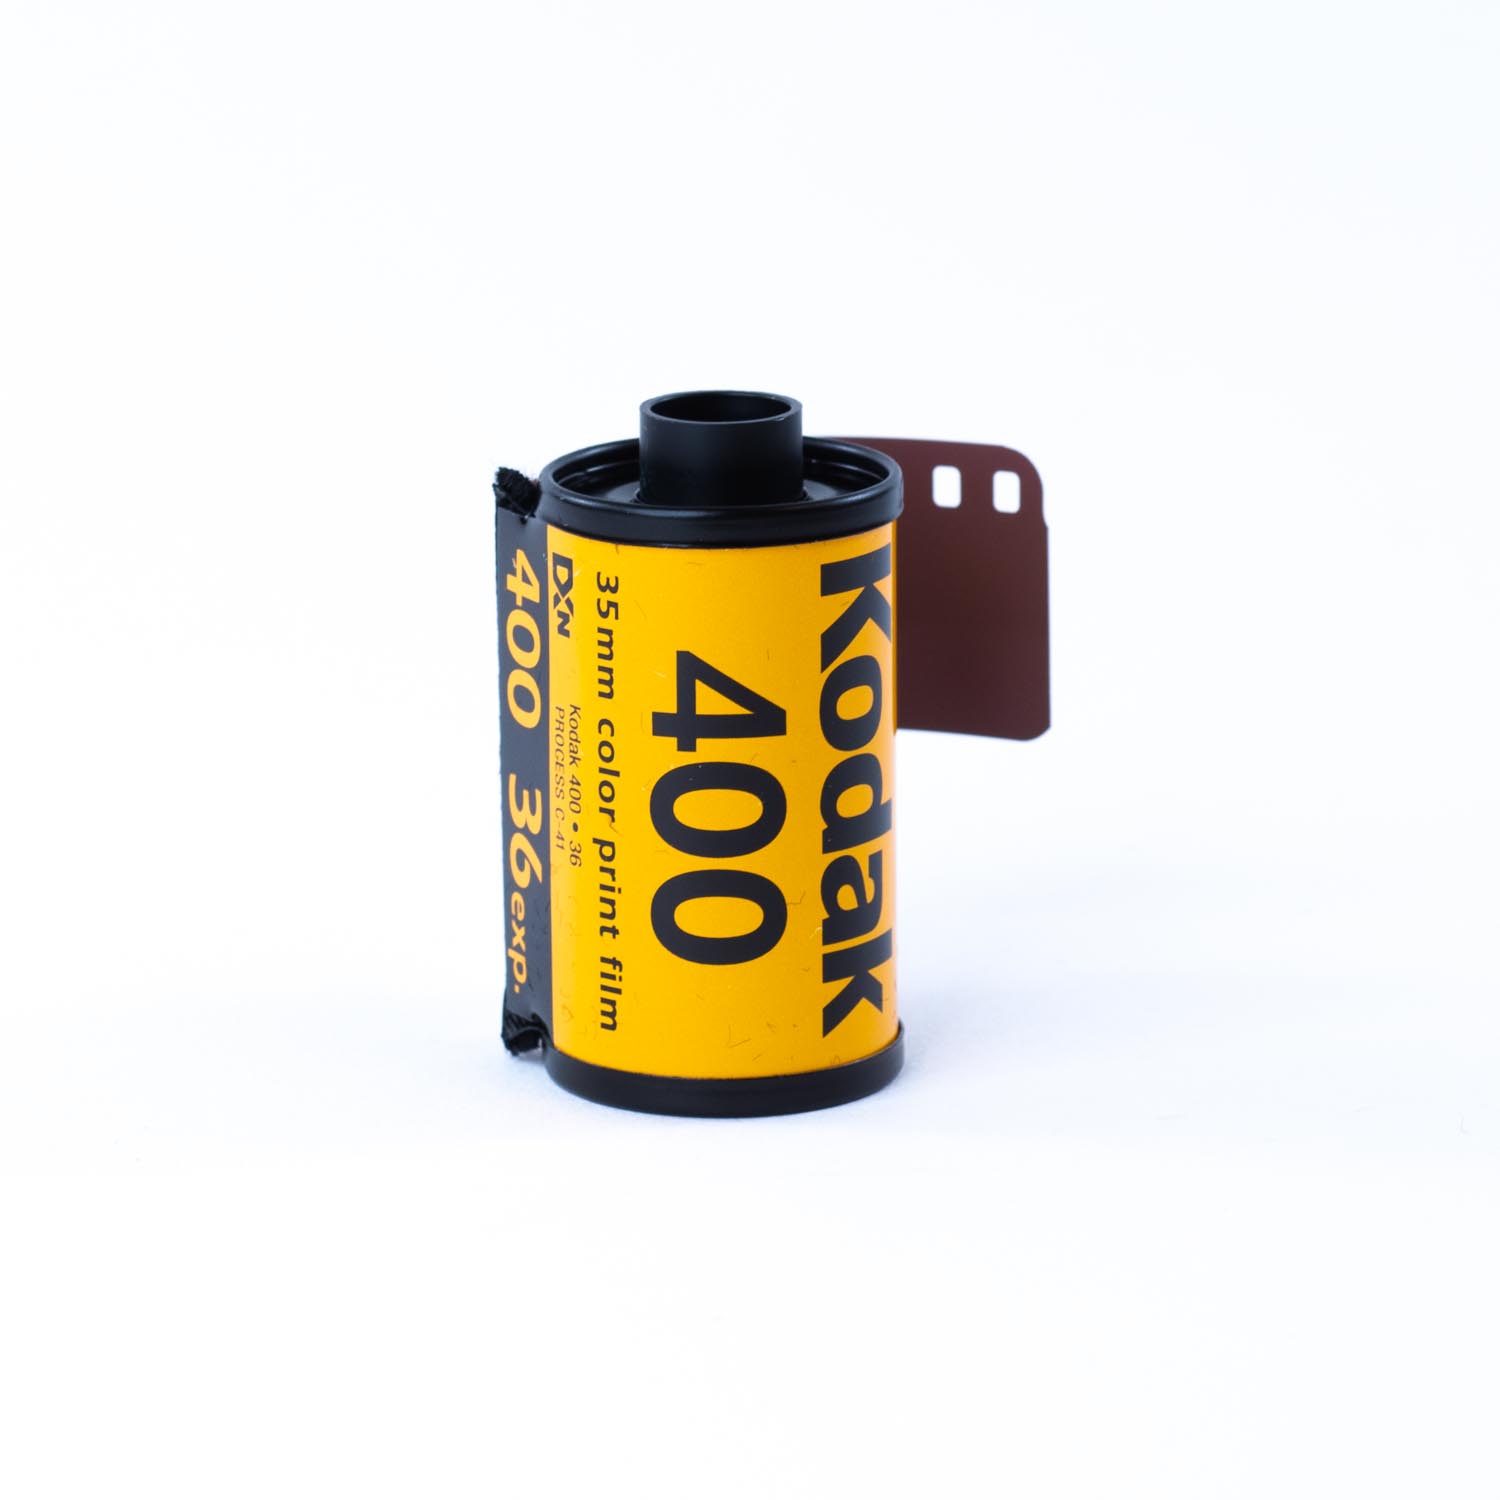 TVignette pour Kodak UltraMax 400 Film négatif couleur  (rouleau de film 35 mm, 36 expositions)